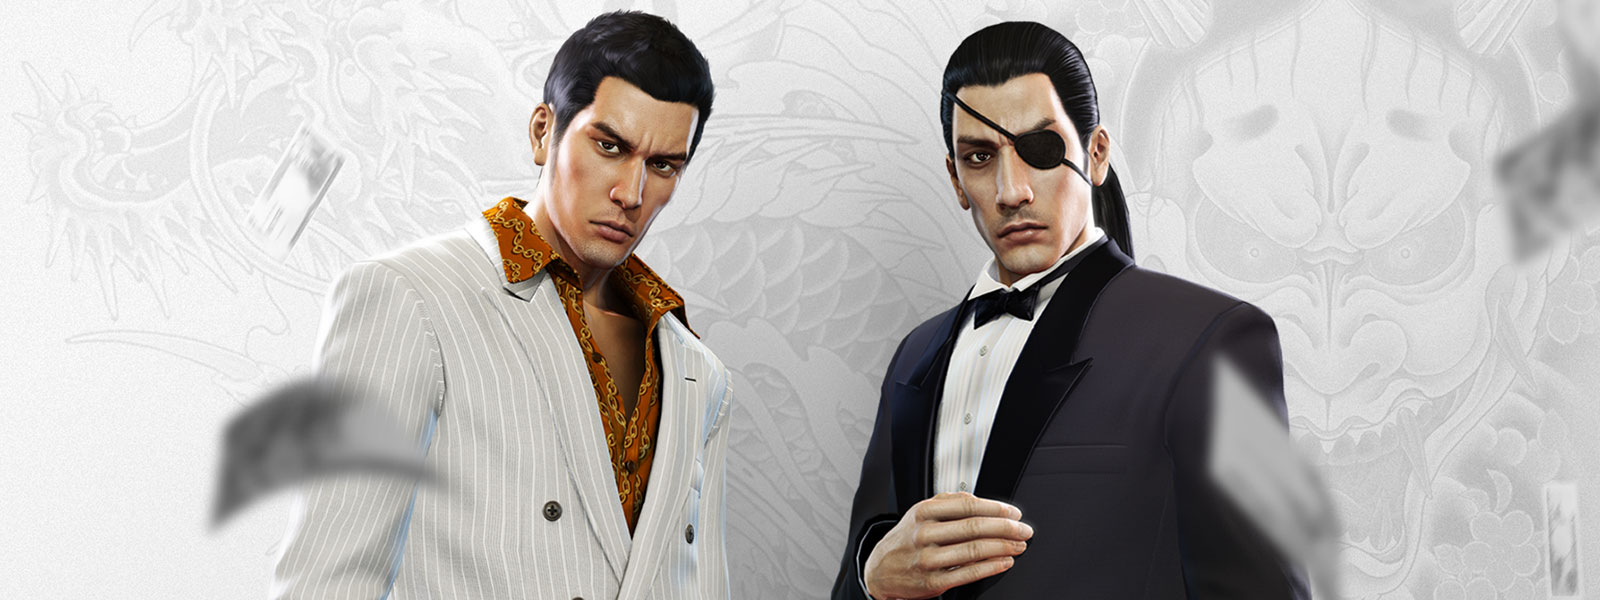 Dos personajes de Yakuza, con trajes elegantes miran fijamente mientras dinero cae a su alrededor, con un fondo de tatuaje de dragón blanco y gris